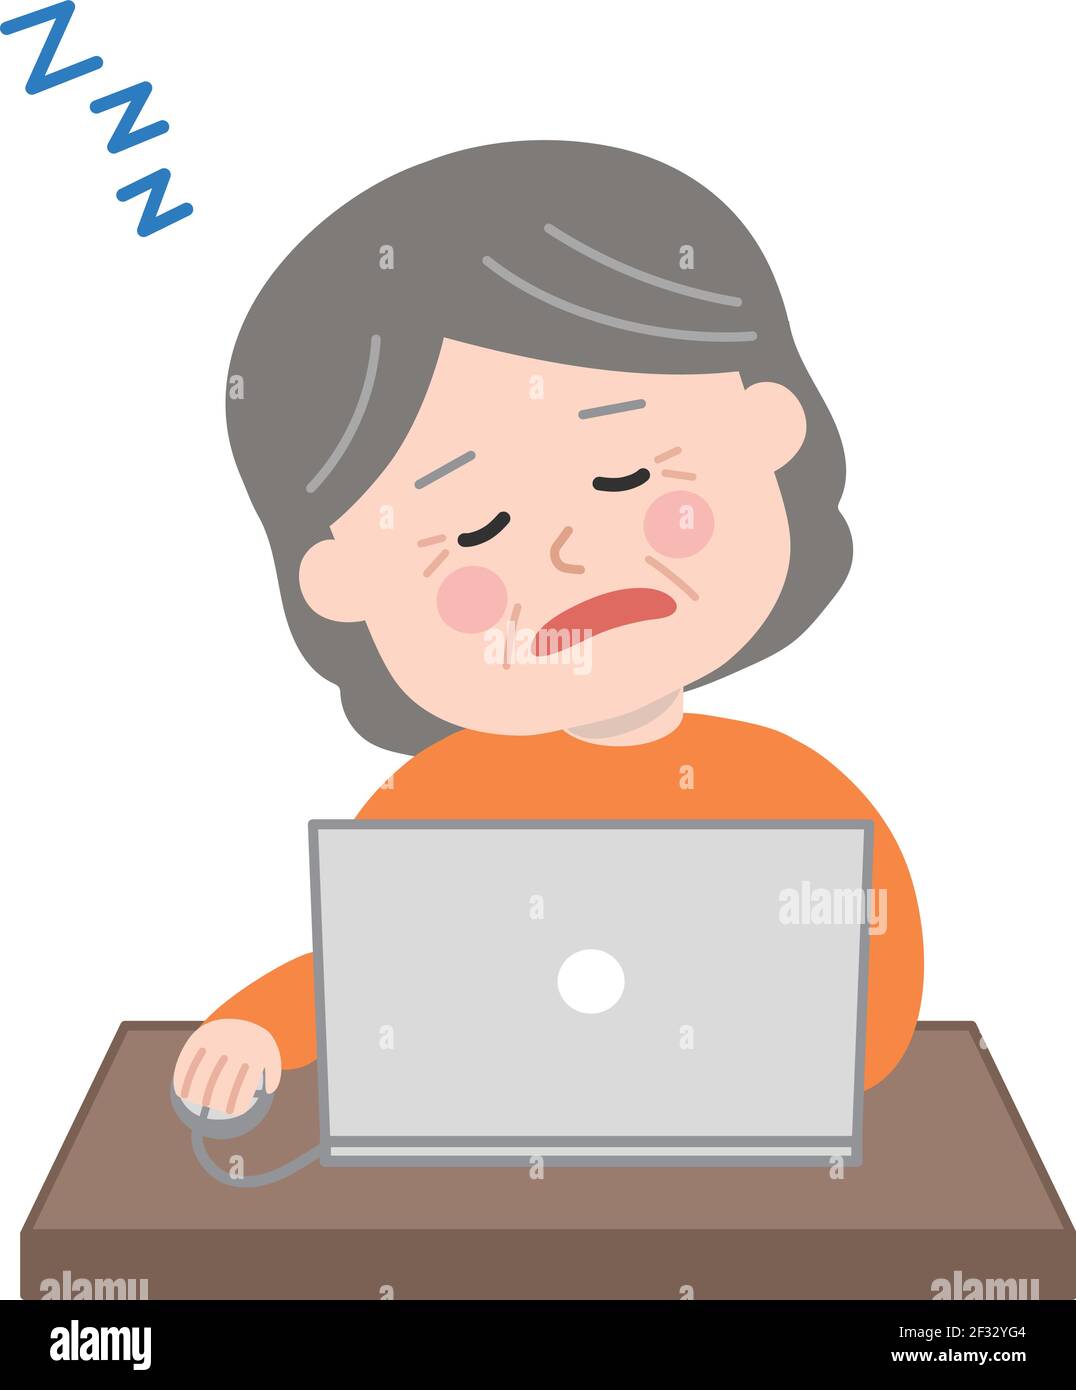 Ältere Frau, die einschläft, während sie einen Laptop benutzt. Vektorgrafik isoliert auf weißem Hintergrund. Stock Vektor